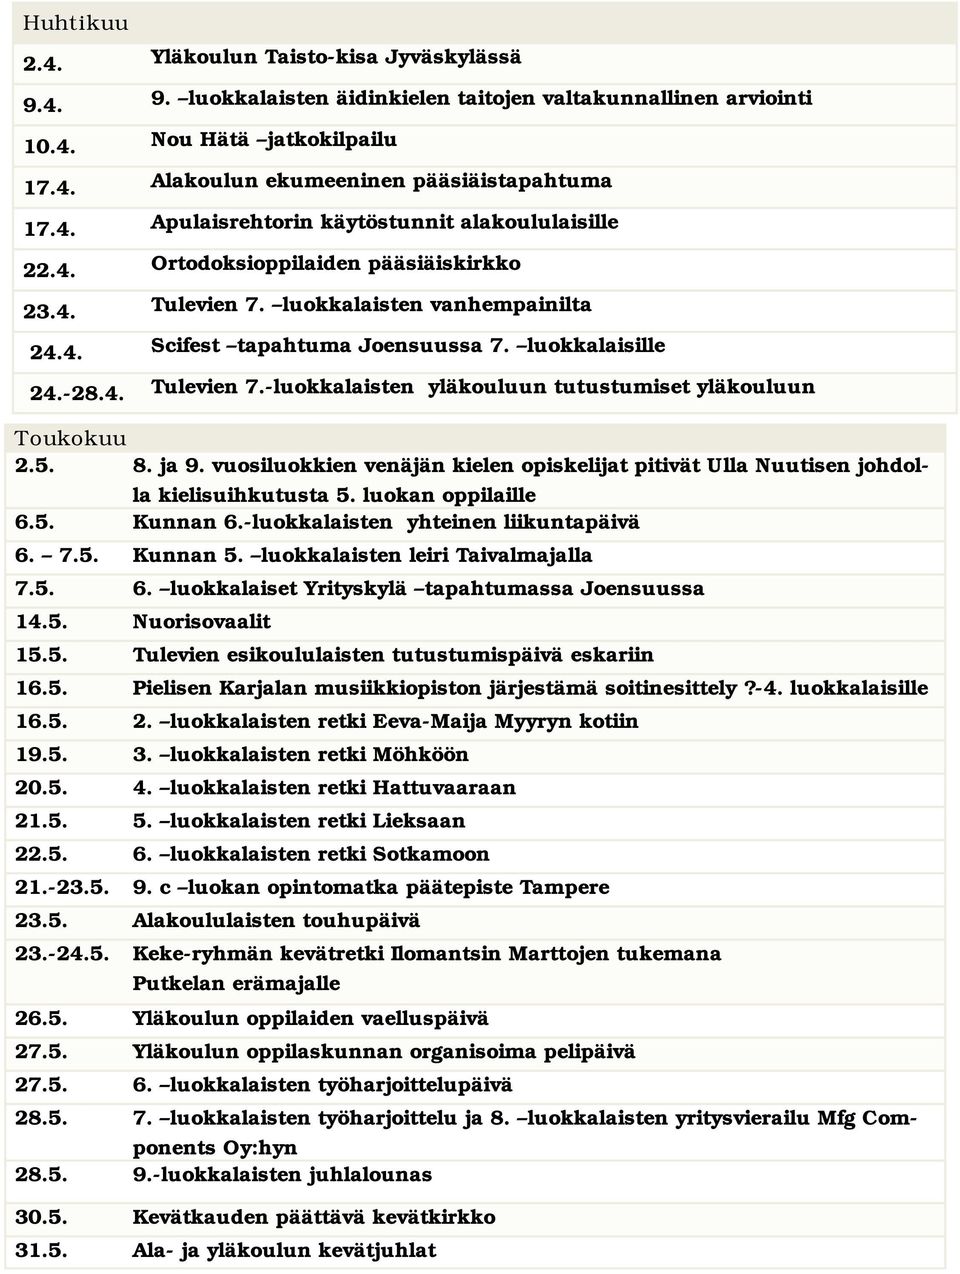 5. 8. ja 9. vuosiluokkien venäjän kielen opiskelijat pitivät Ulla Nuutisen johdolla kielisuihkutusta 5. luokan oppilaille 6.5. Kunnan 6.-luokkalaisten yhteinen liikuntapäivä 6. 7.5. Kunnan 5.